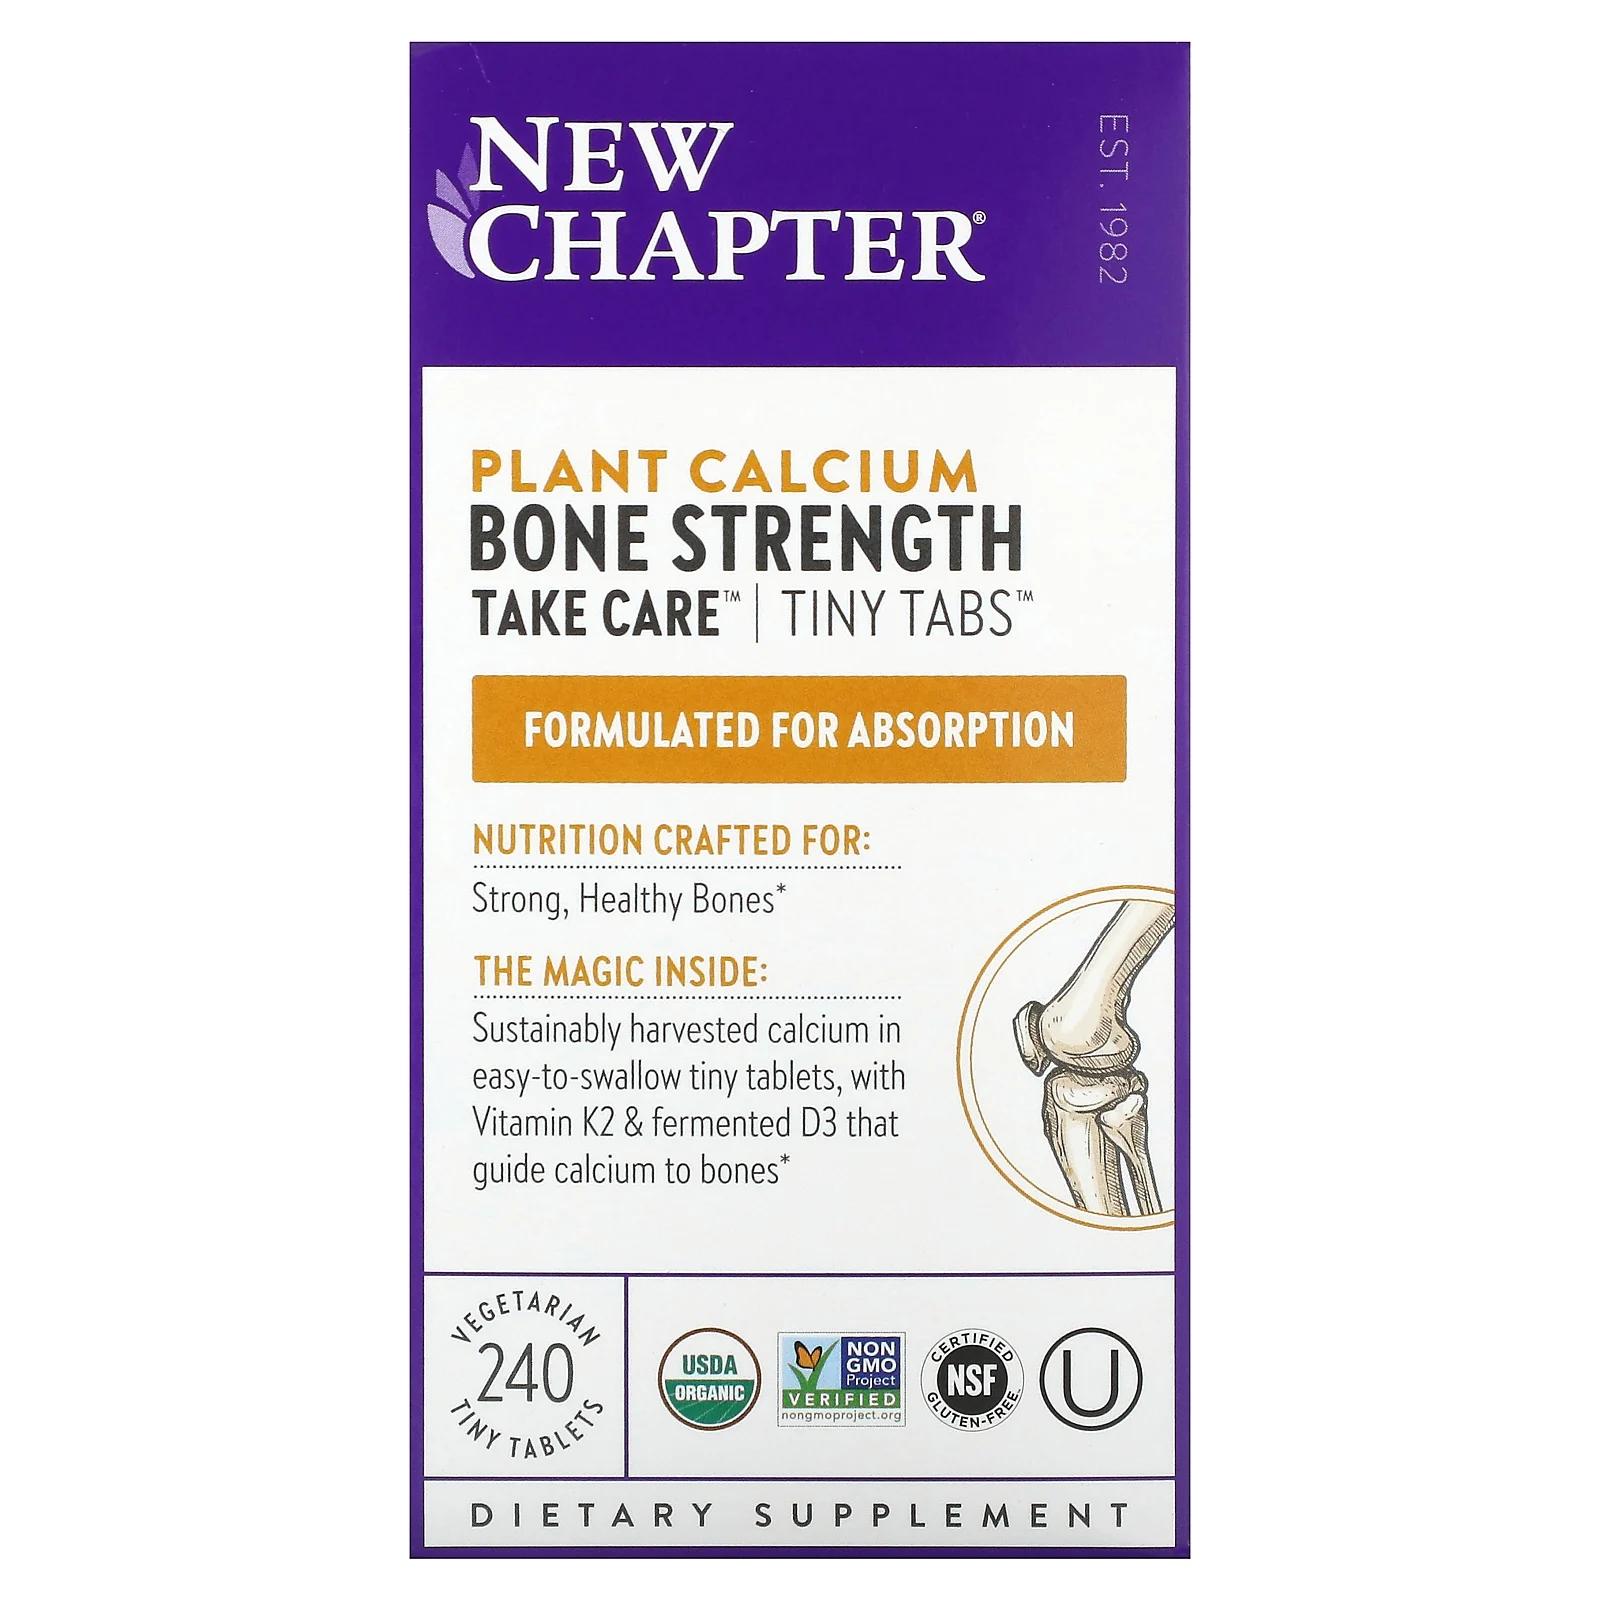 new chapter bone strength take care добавка для укрепления костей 180 маленьких растительных таблеток New Chapter Take Care сила костей 240 минитаблеток